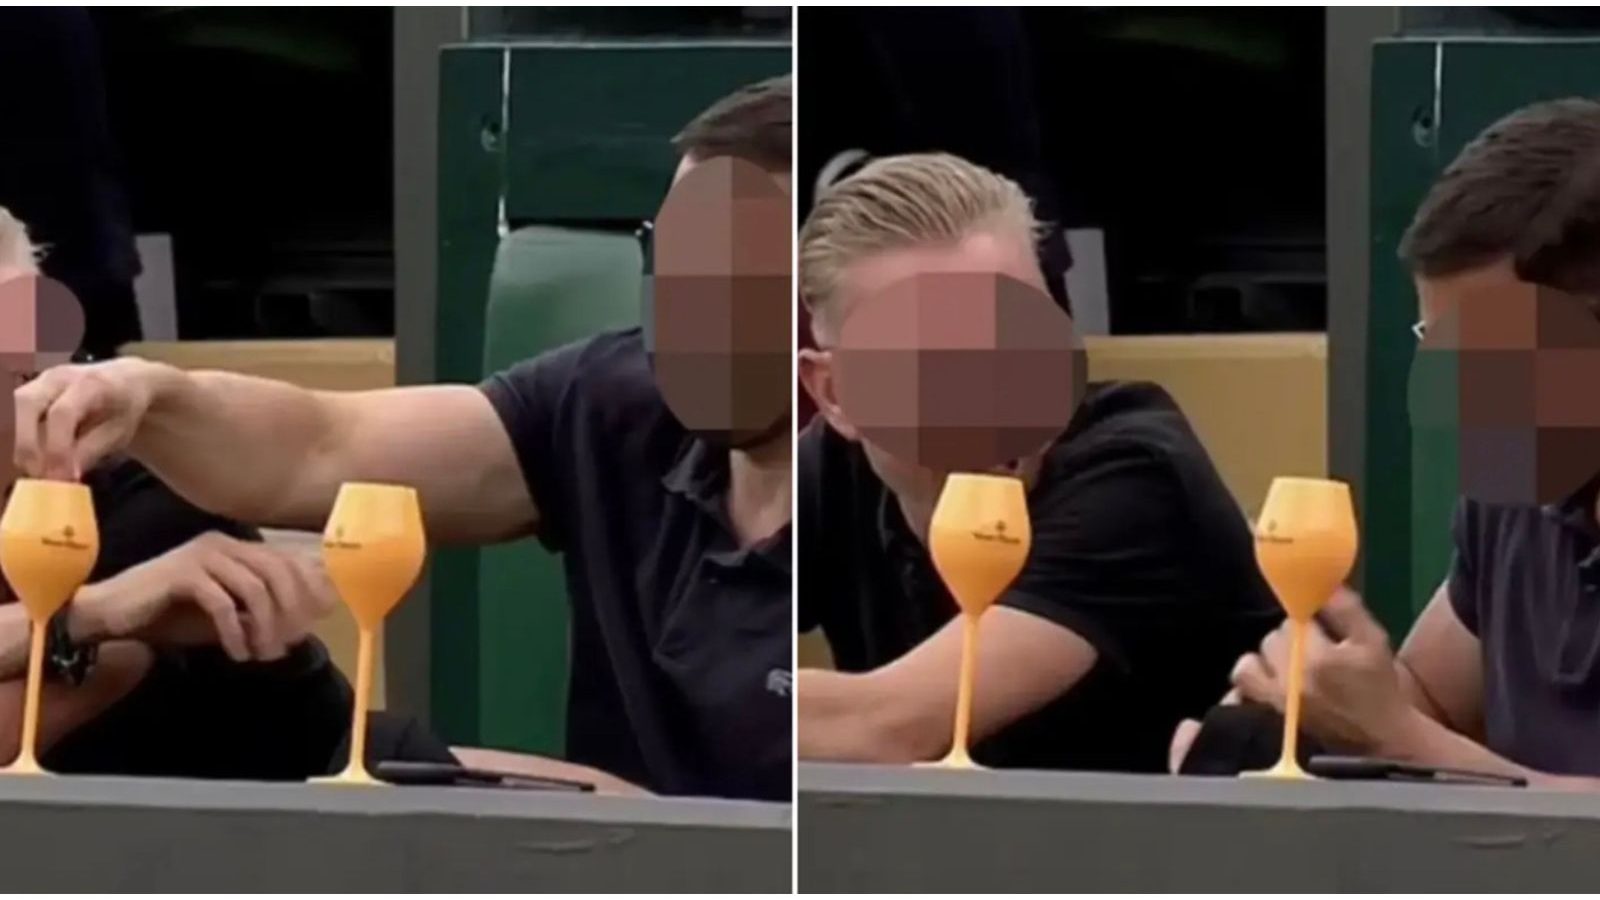 Wimbledon-toeschouwer ziet op live tv iets in de drank van iemand anders stoppen